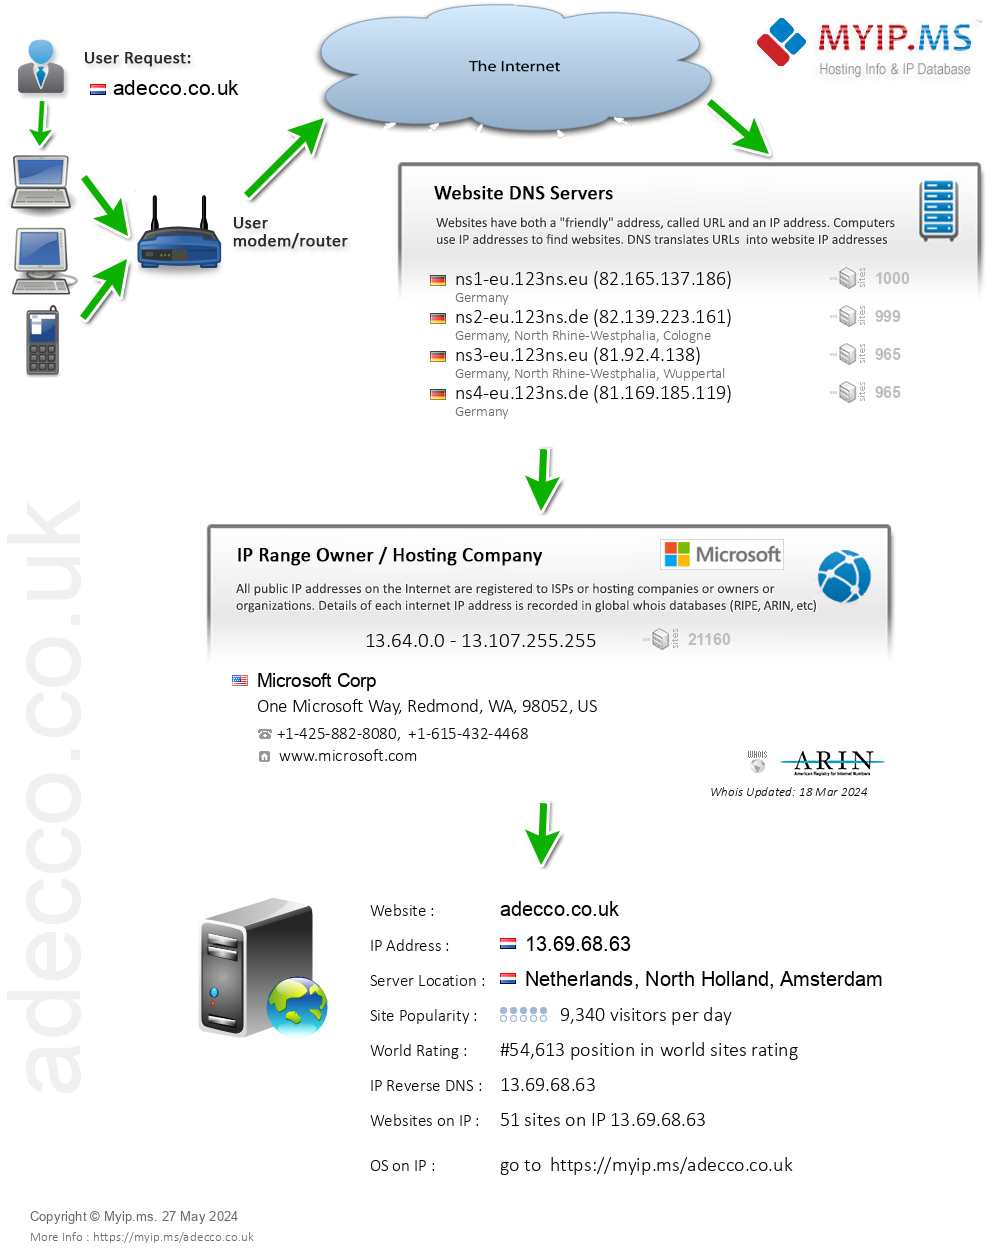 Adecco.co.uk - Website Hosting Visual IP Diagram